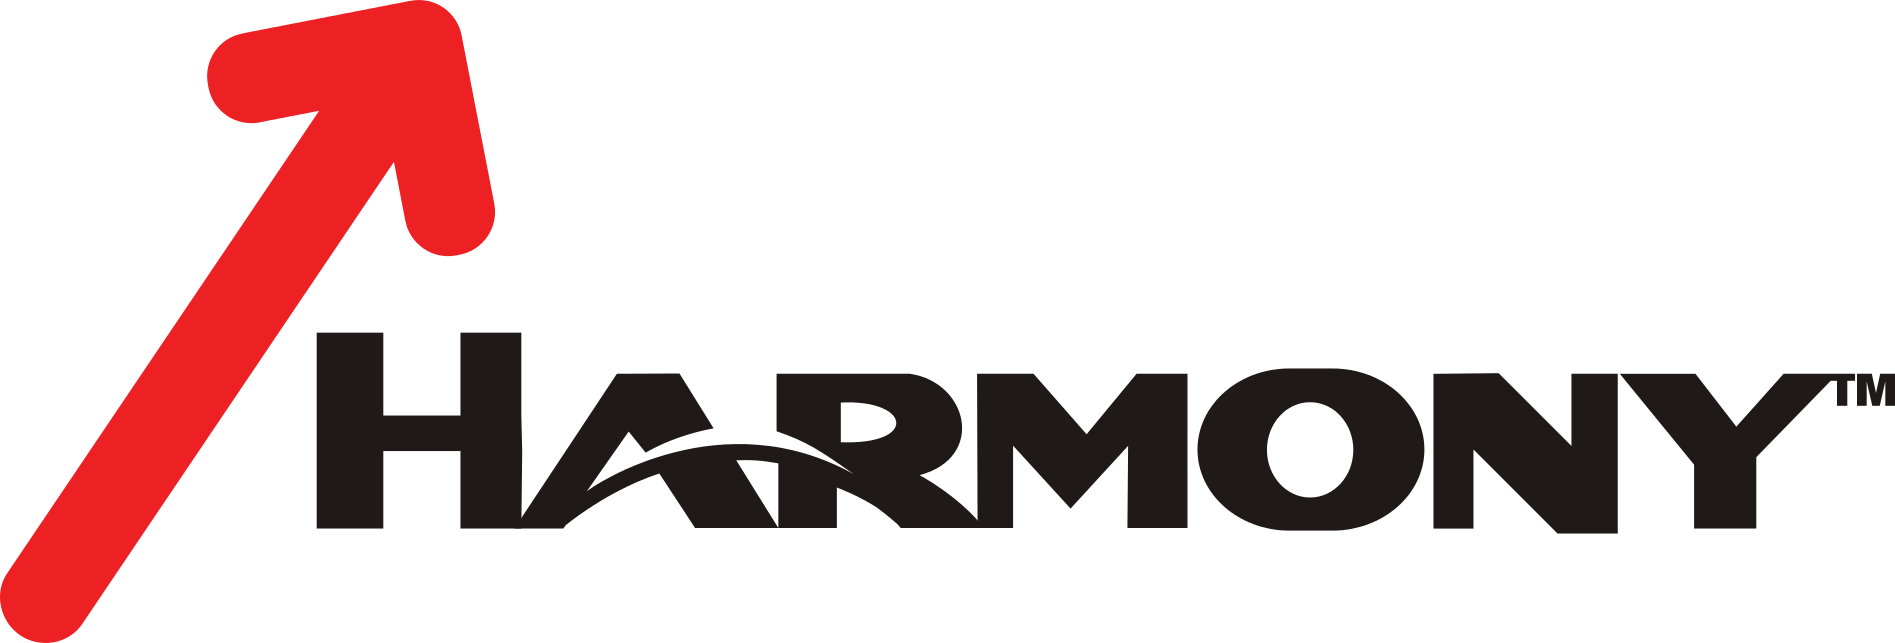 Harmony Gold Mining Logo 2 By Jason - Harmony Gold Mining Company Ltd (1895x643)